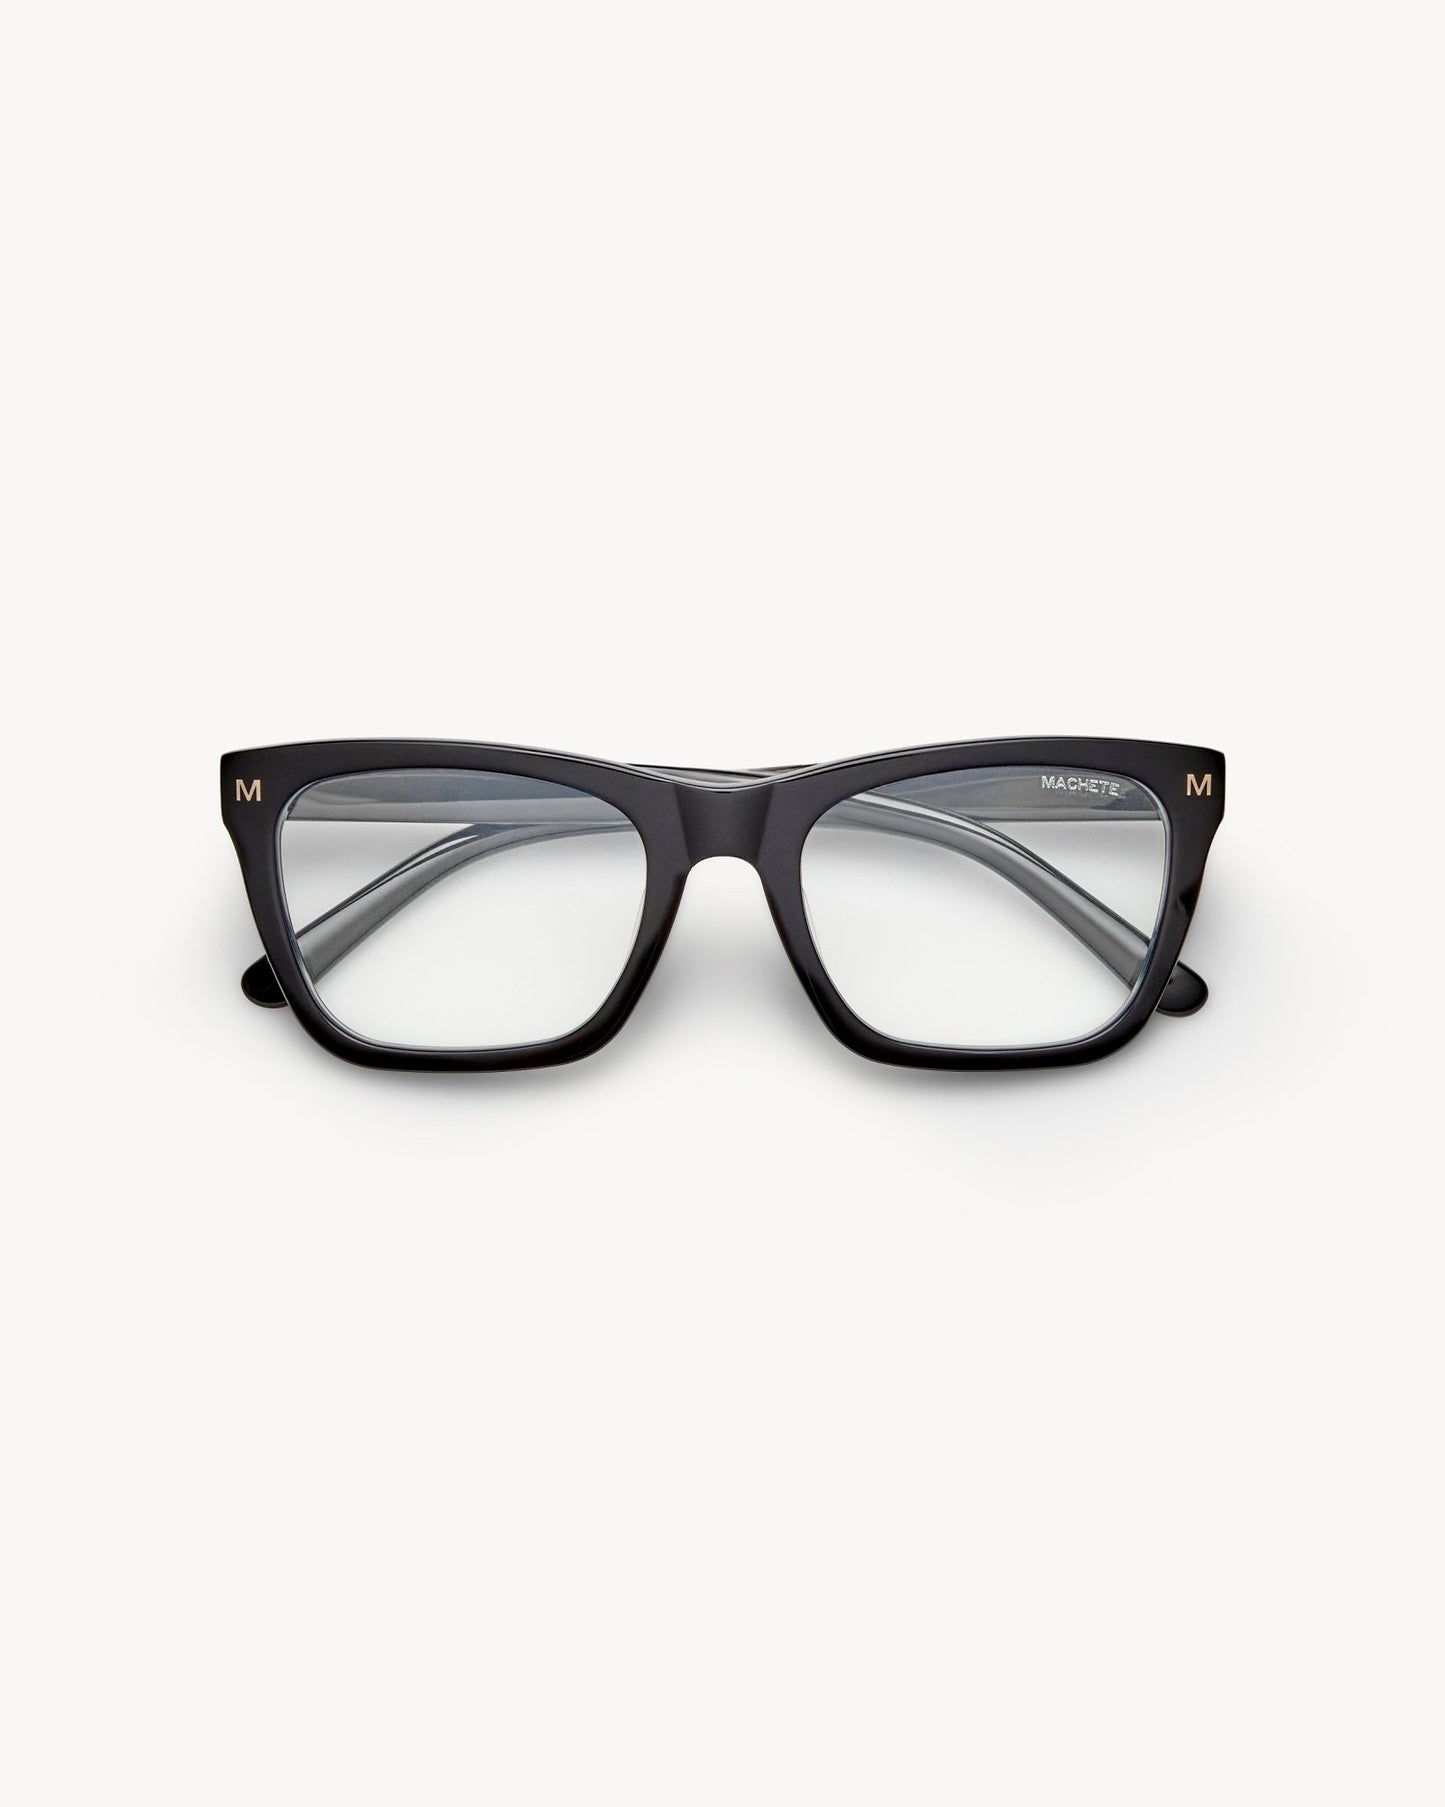 MACHETE Glasses in Black